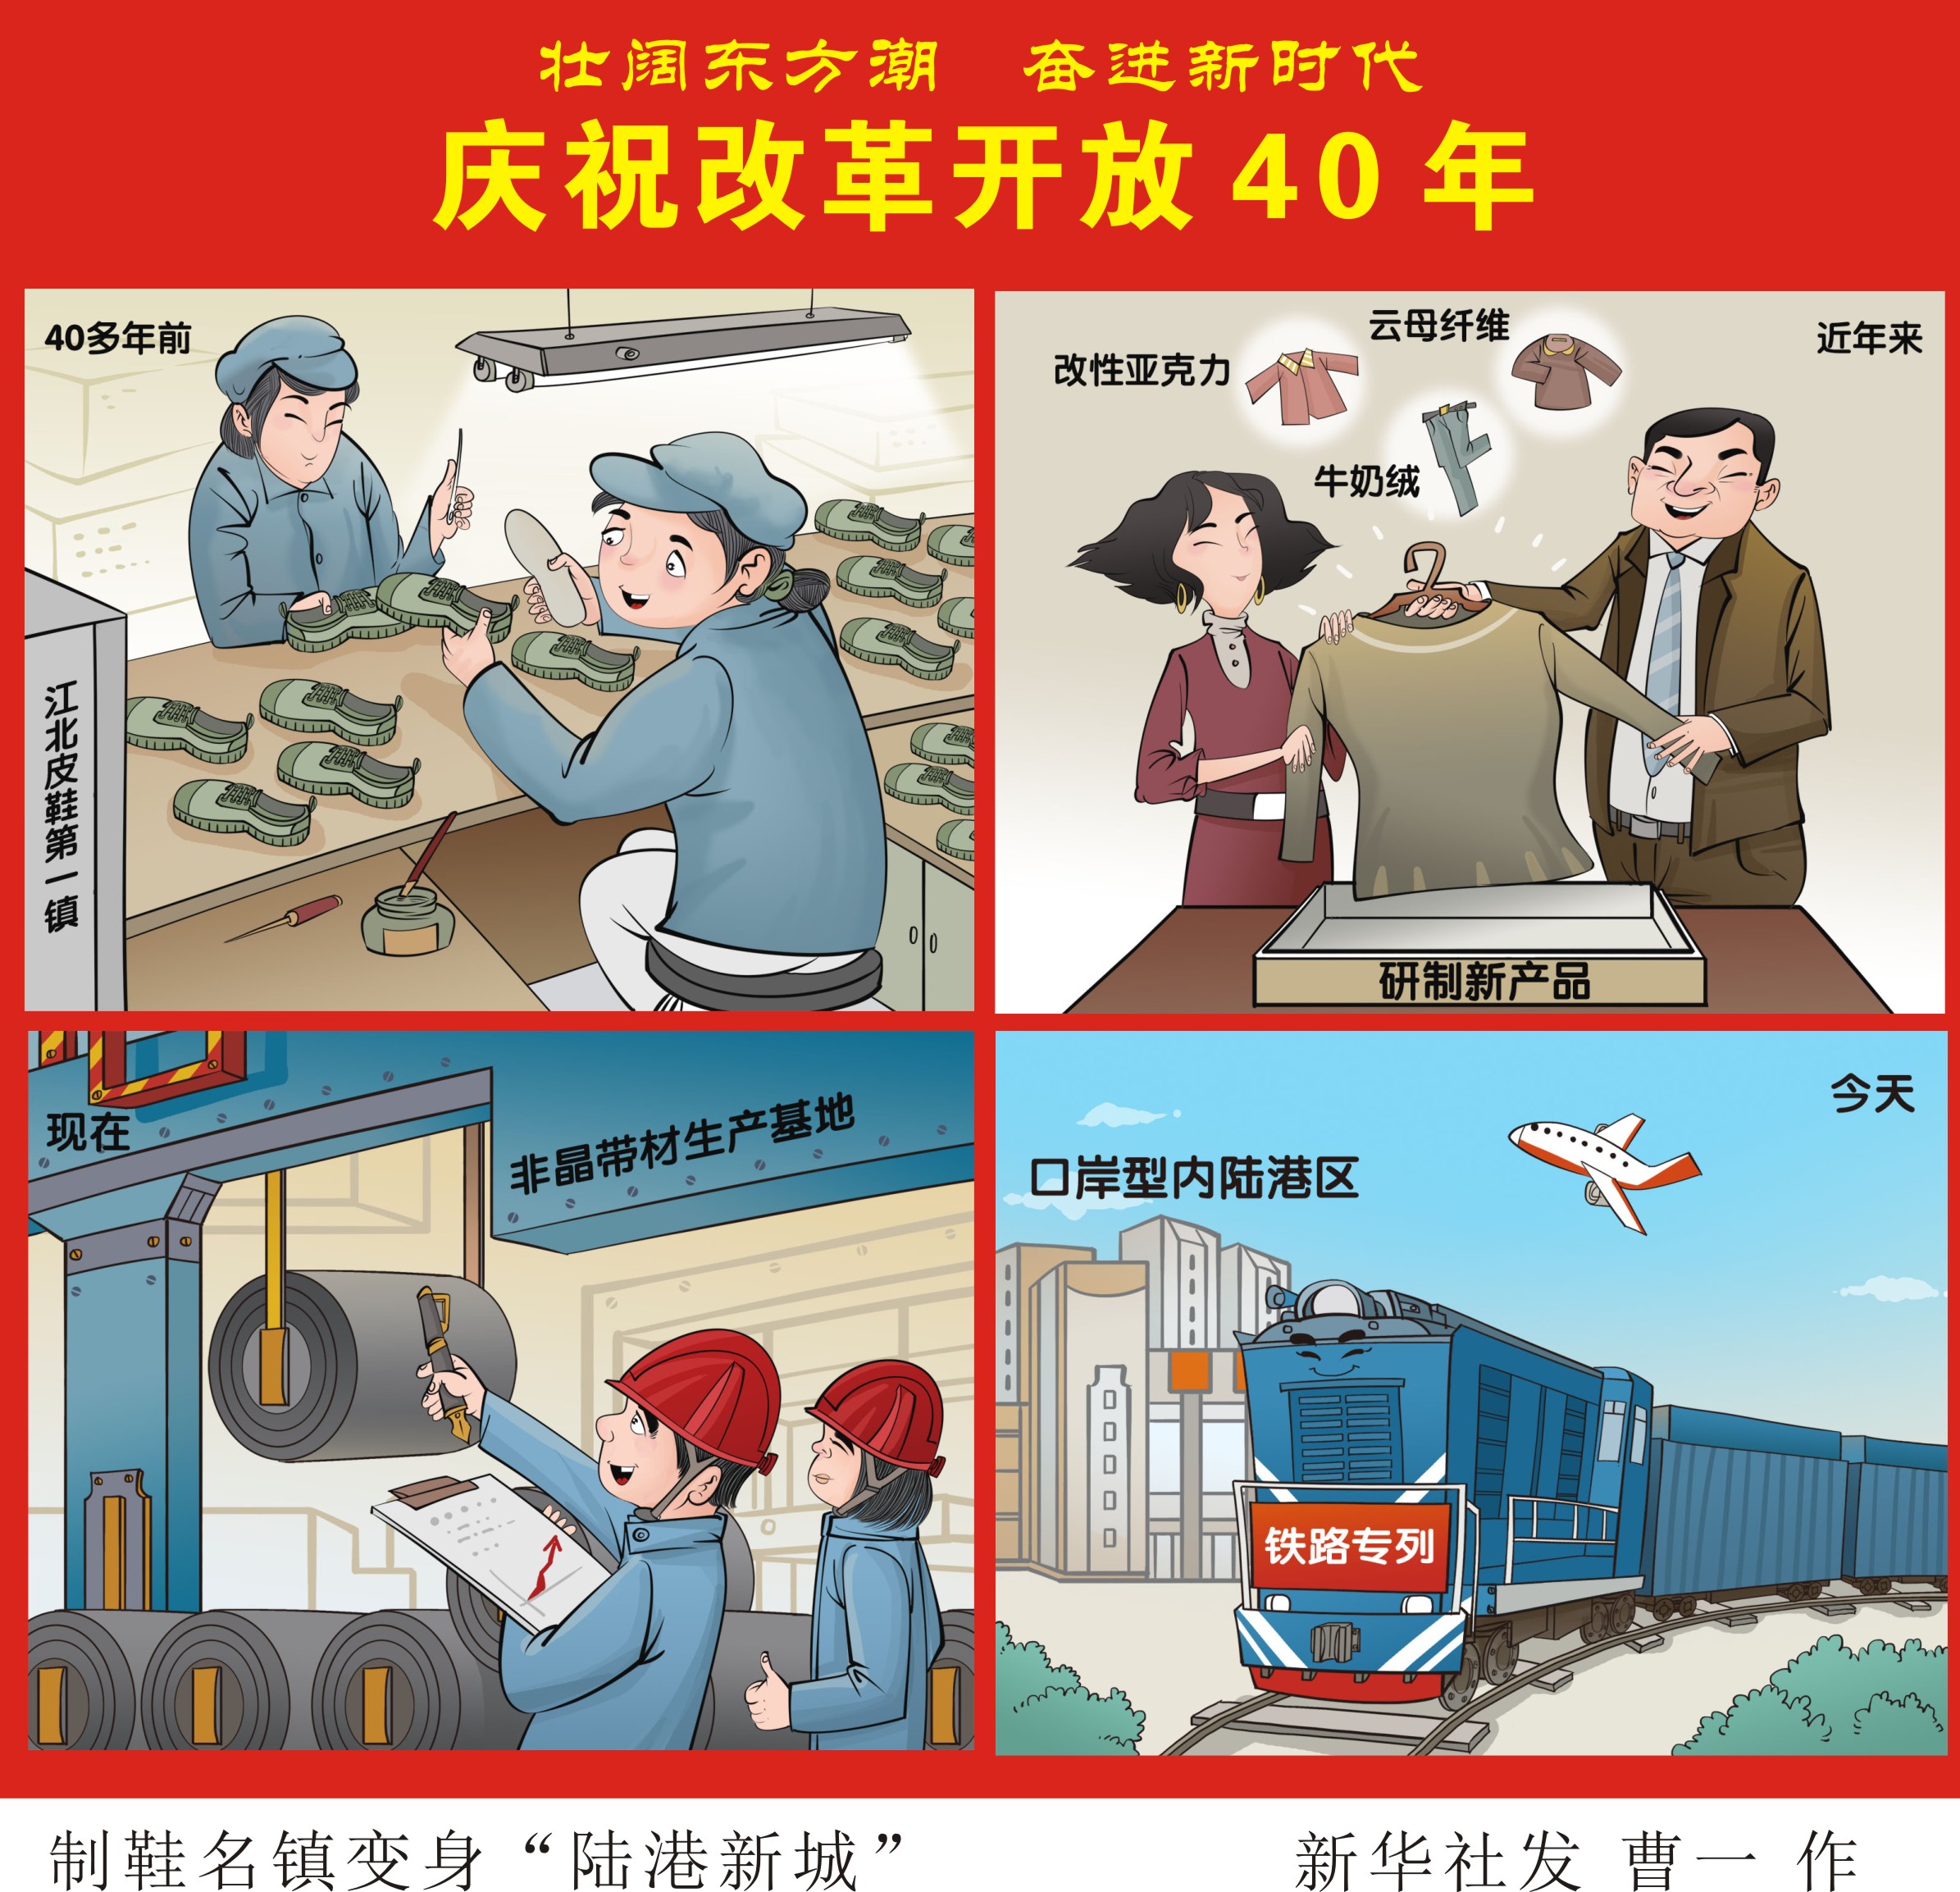 (图表·漫画)[壮阔东方潮 奋进新时代——庆祝改革开放40年]制鞋名镇